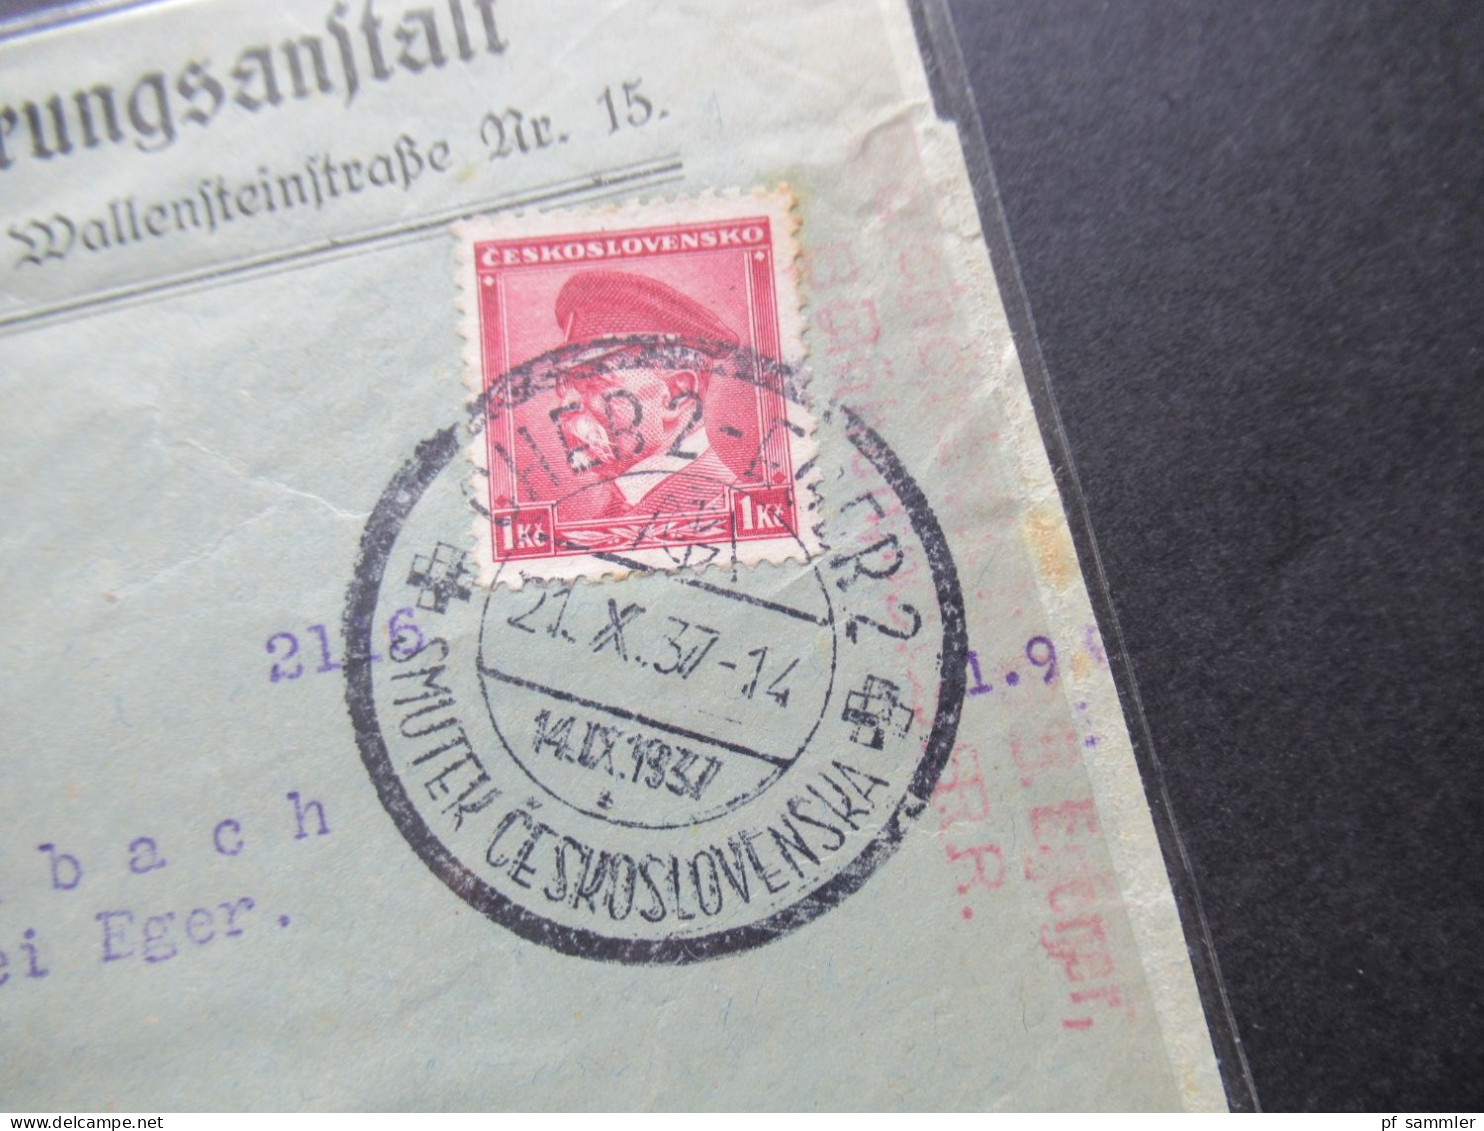 CSSR / Sudetenland 14.10.1937 Cheb 2 Eger 2 Briefstück / VS Registrierte Hilfsversicherungsanstalt In Eger - Cartas & Documentos